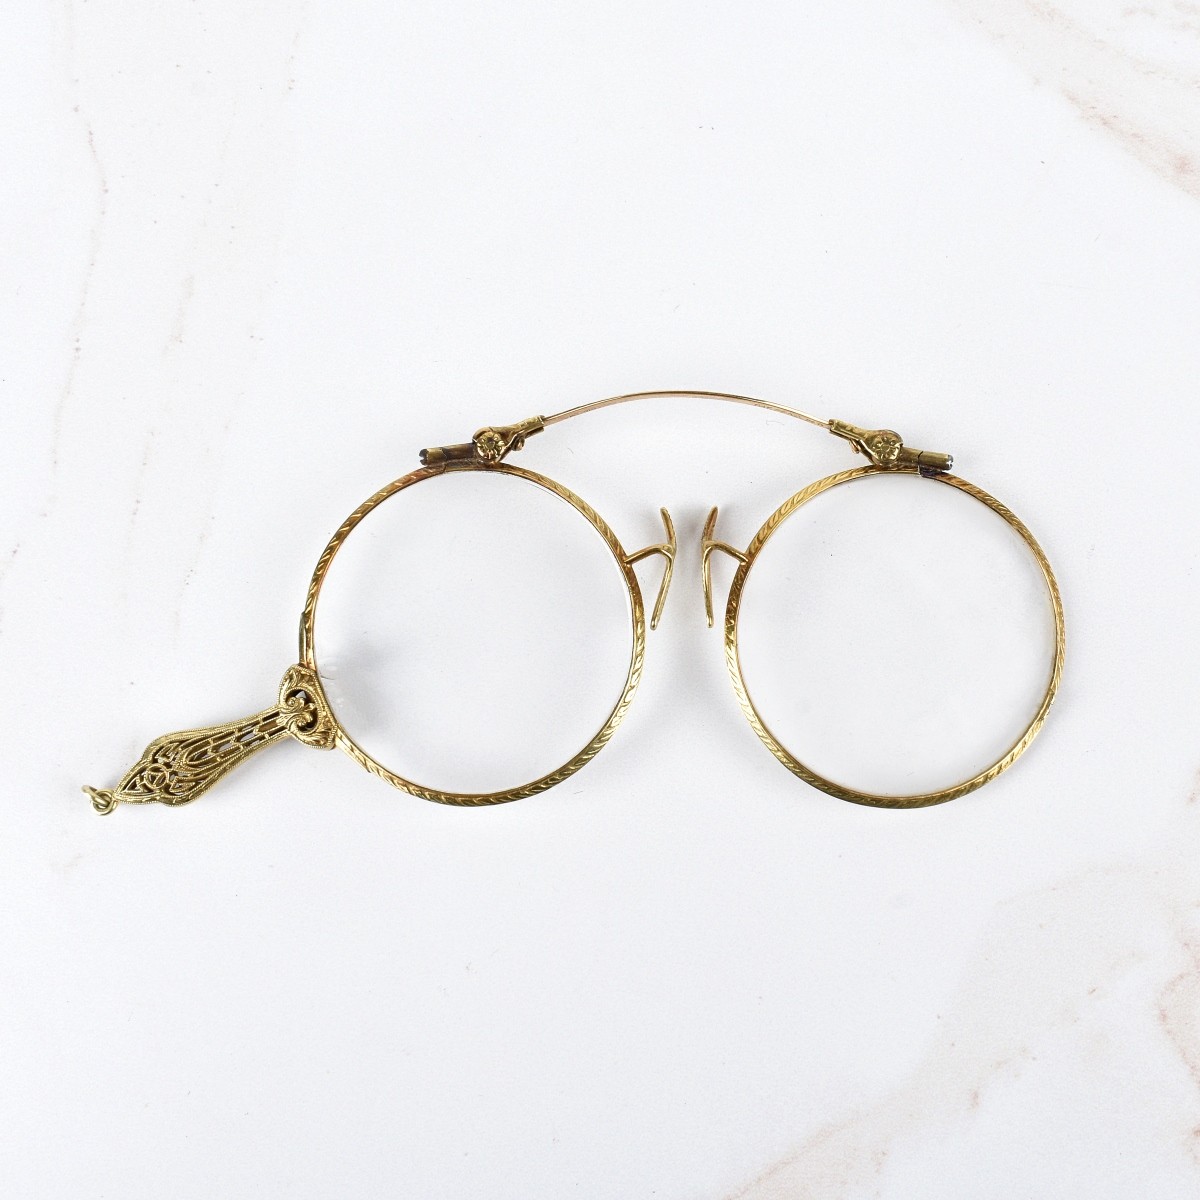 Antique 14K Lorgnette Spectacles